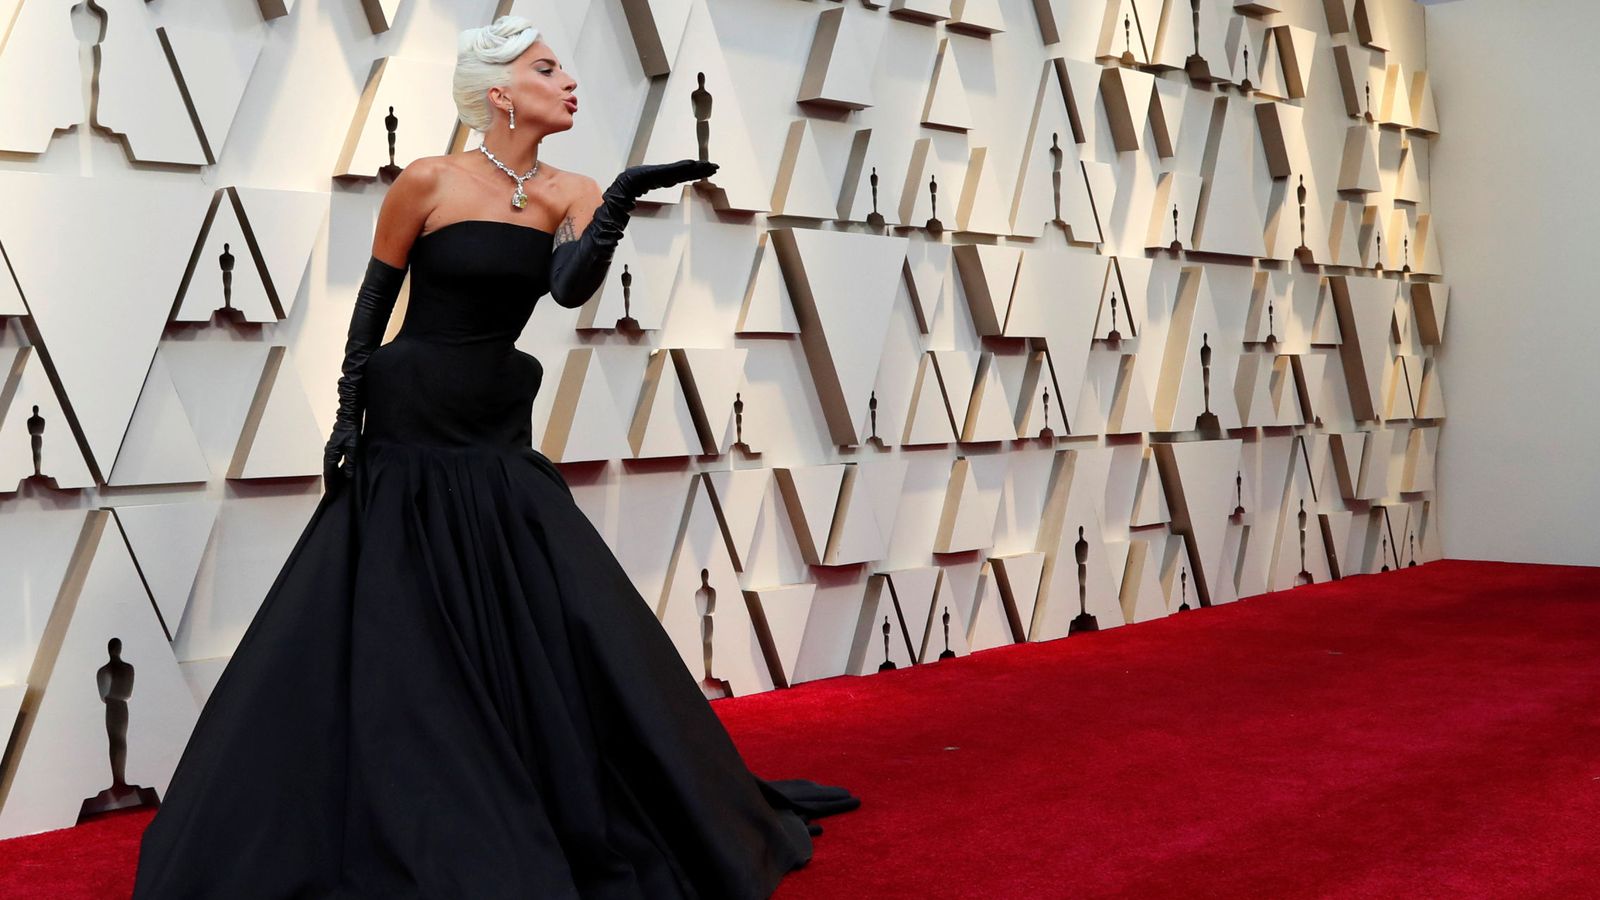 Foto: Una espectacular Lady Gaga en la red carpet de los Premios Oscar. (Reuters)